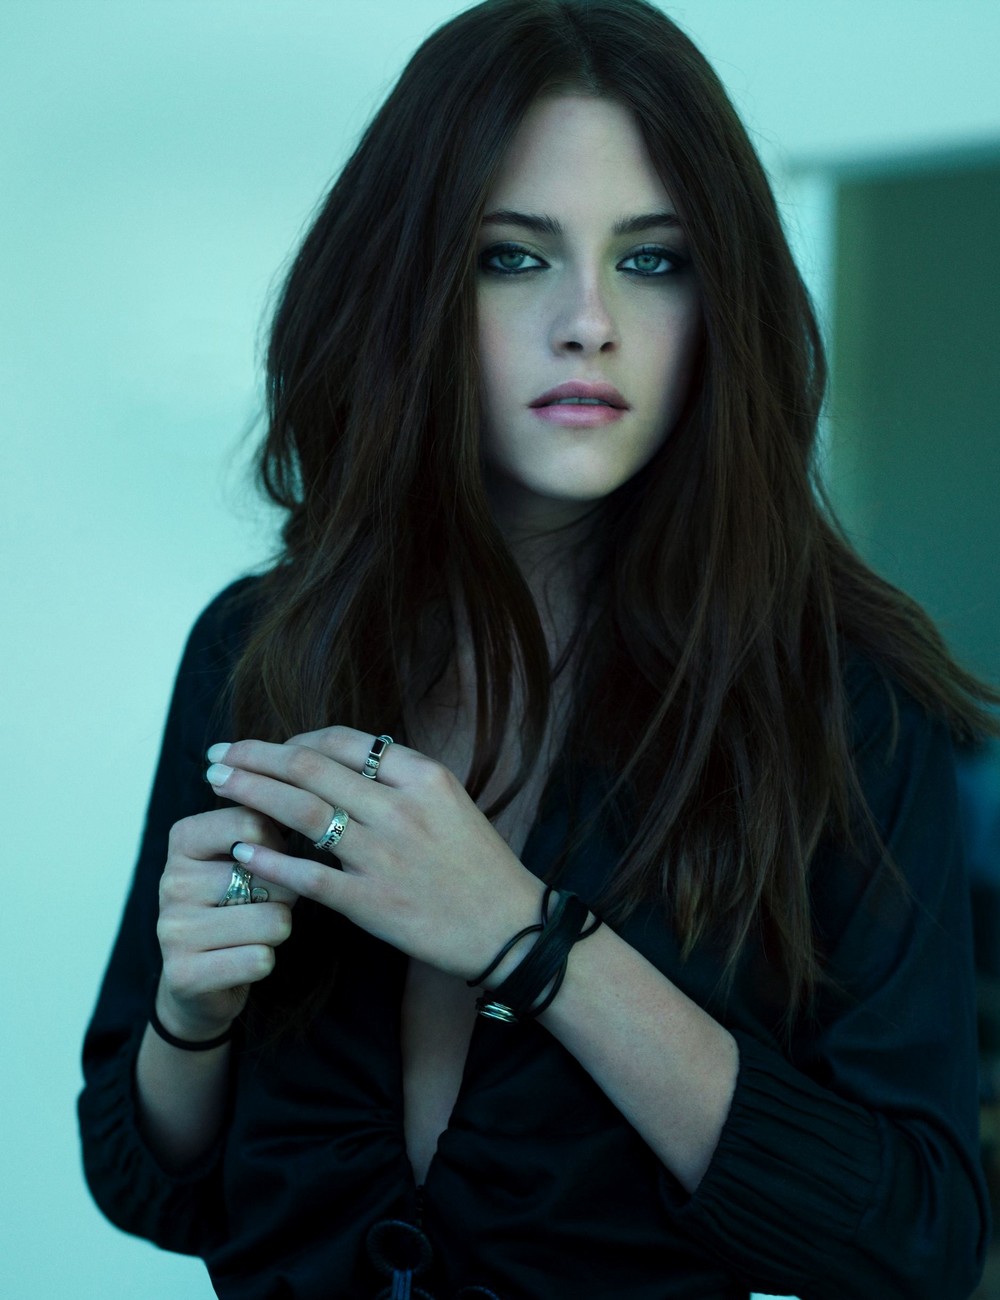 Kristen Stewart - Star of Twilight